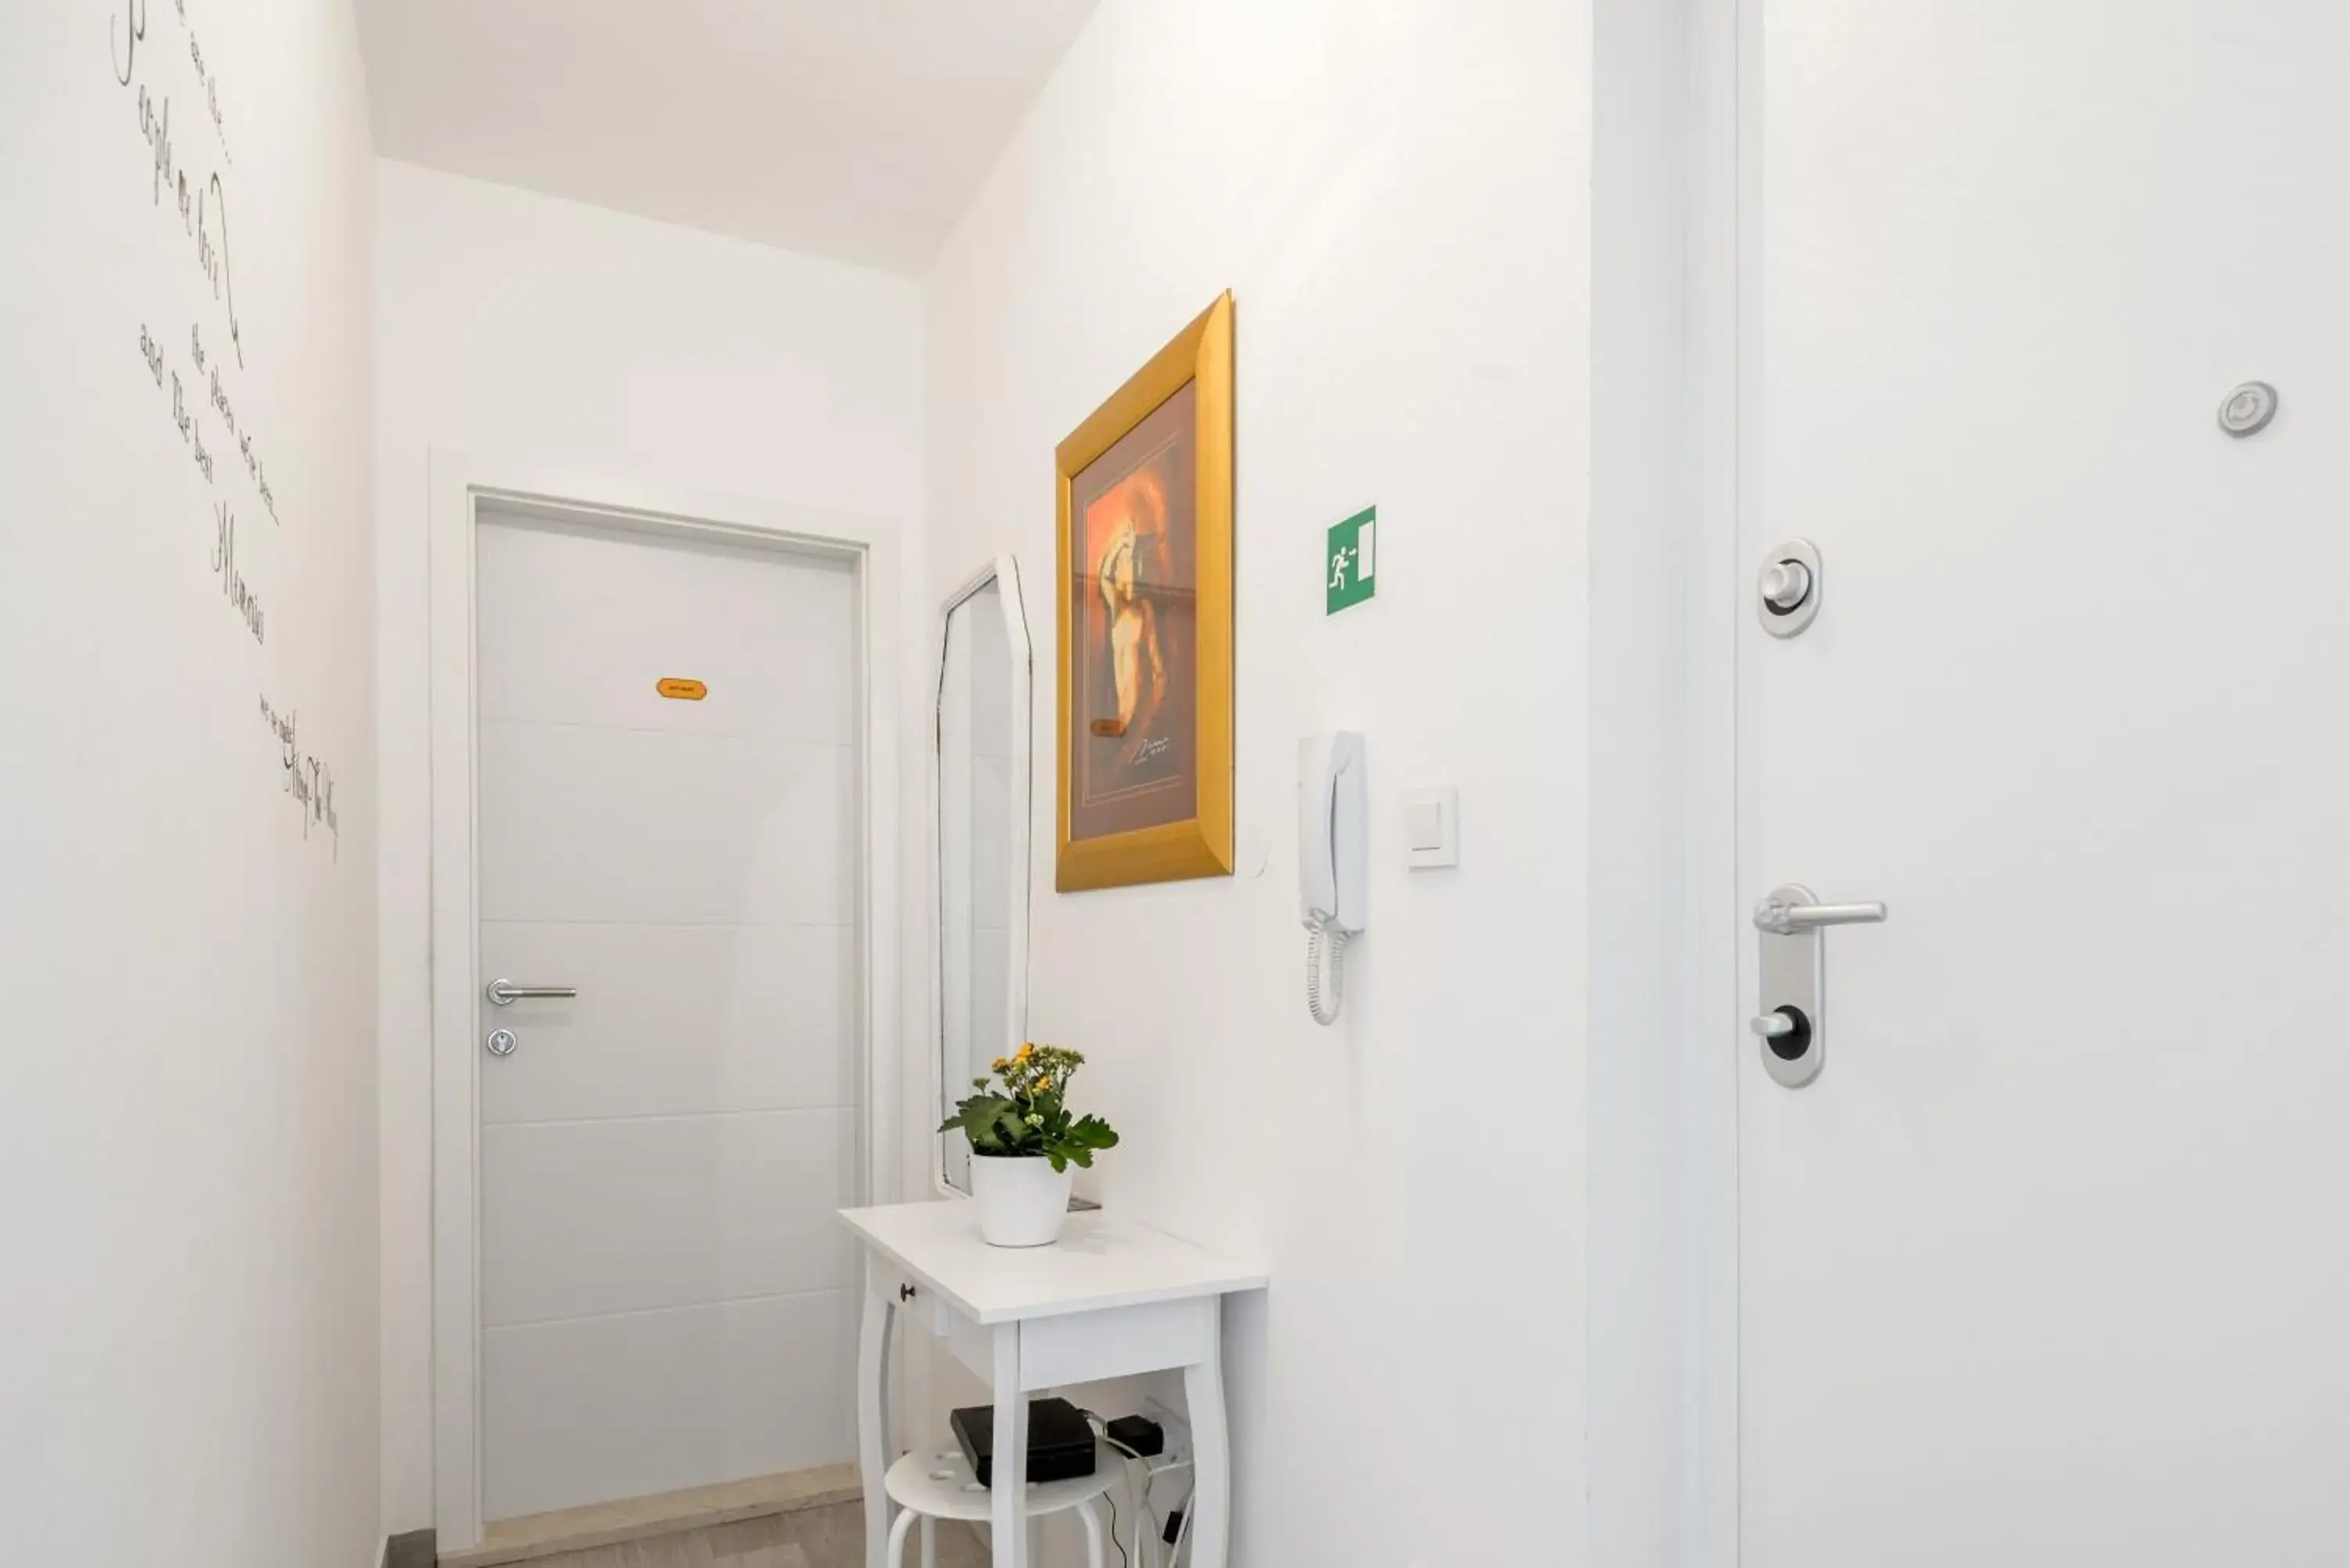 Lobby or reception, Bathroom in FM Apartments